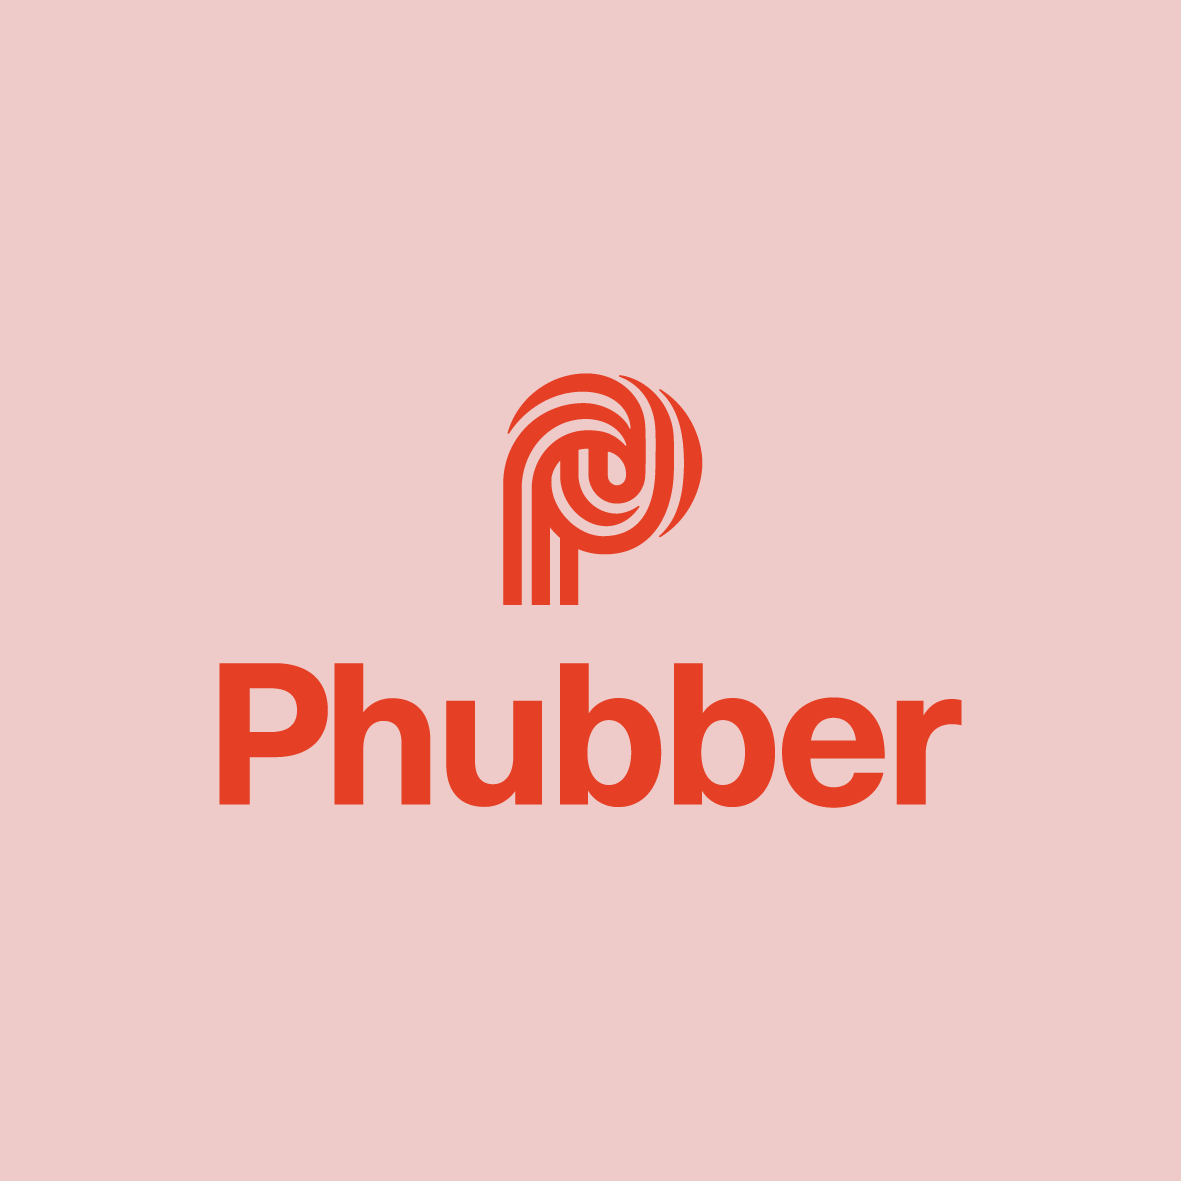 Phubber